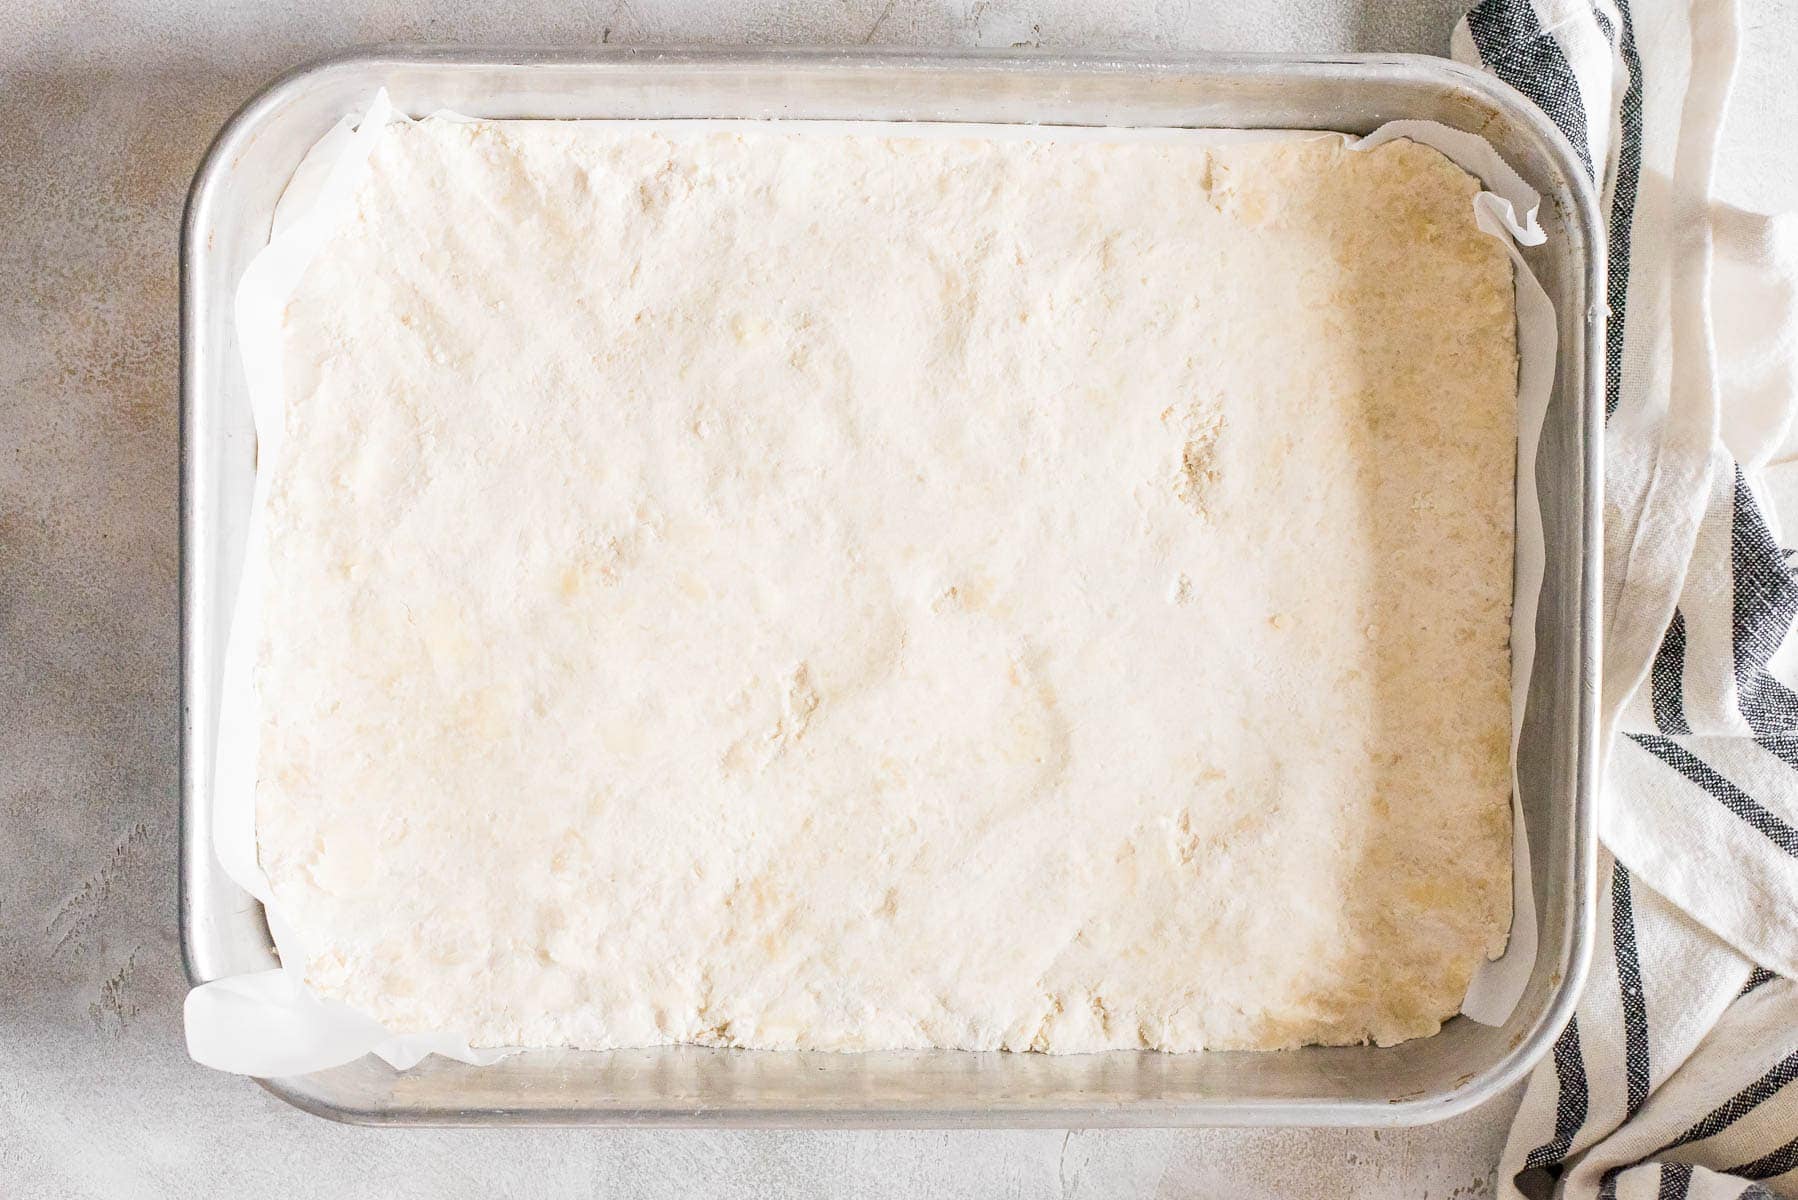 shortbread mixture pressed into baking pan